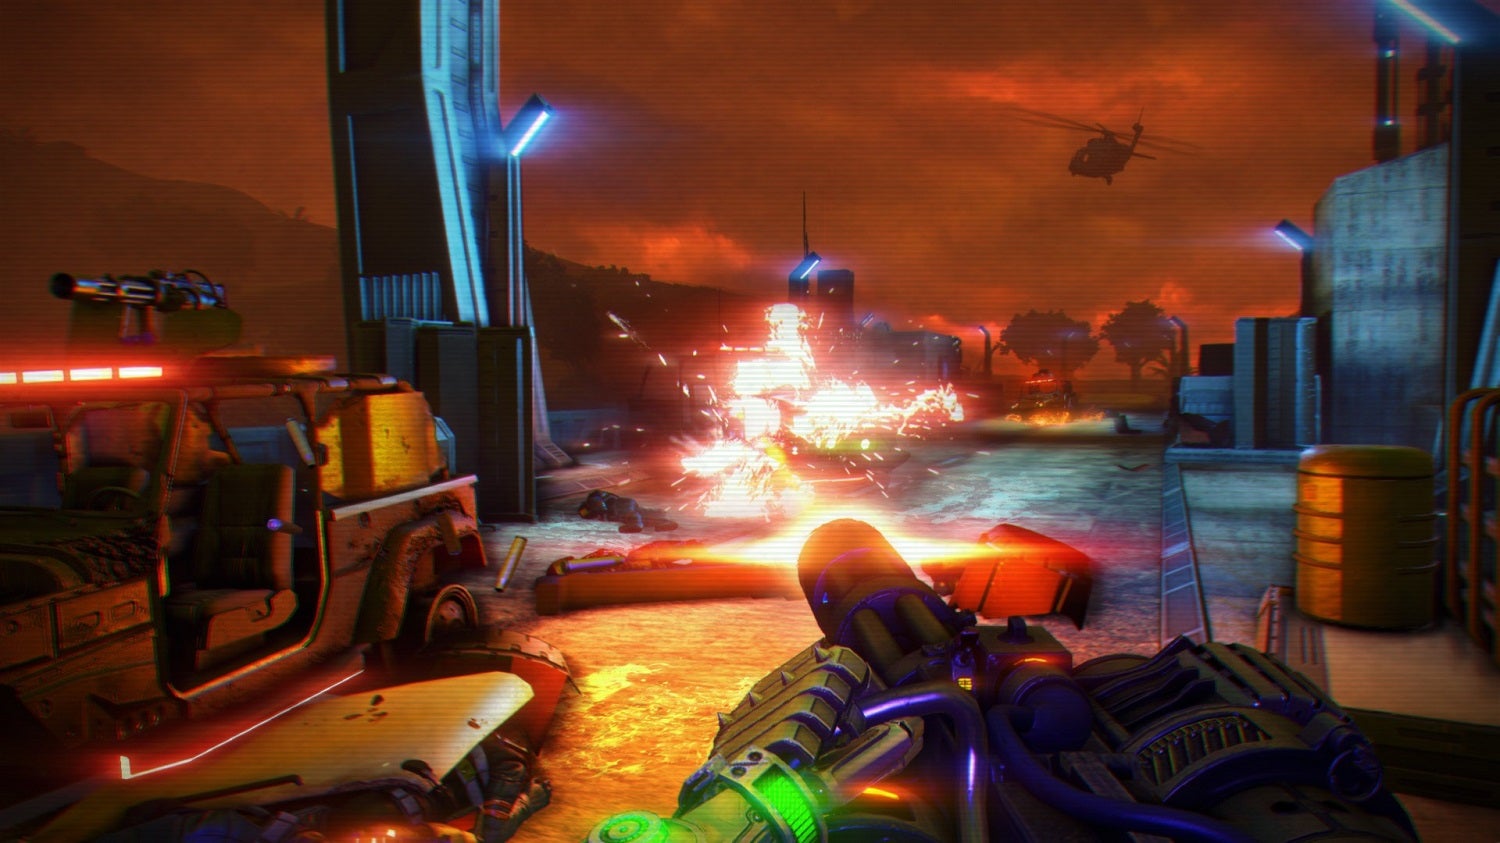 Obrazki dla Far Cry 3: Blood Dragon dostępne za darmo na PC